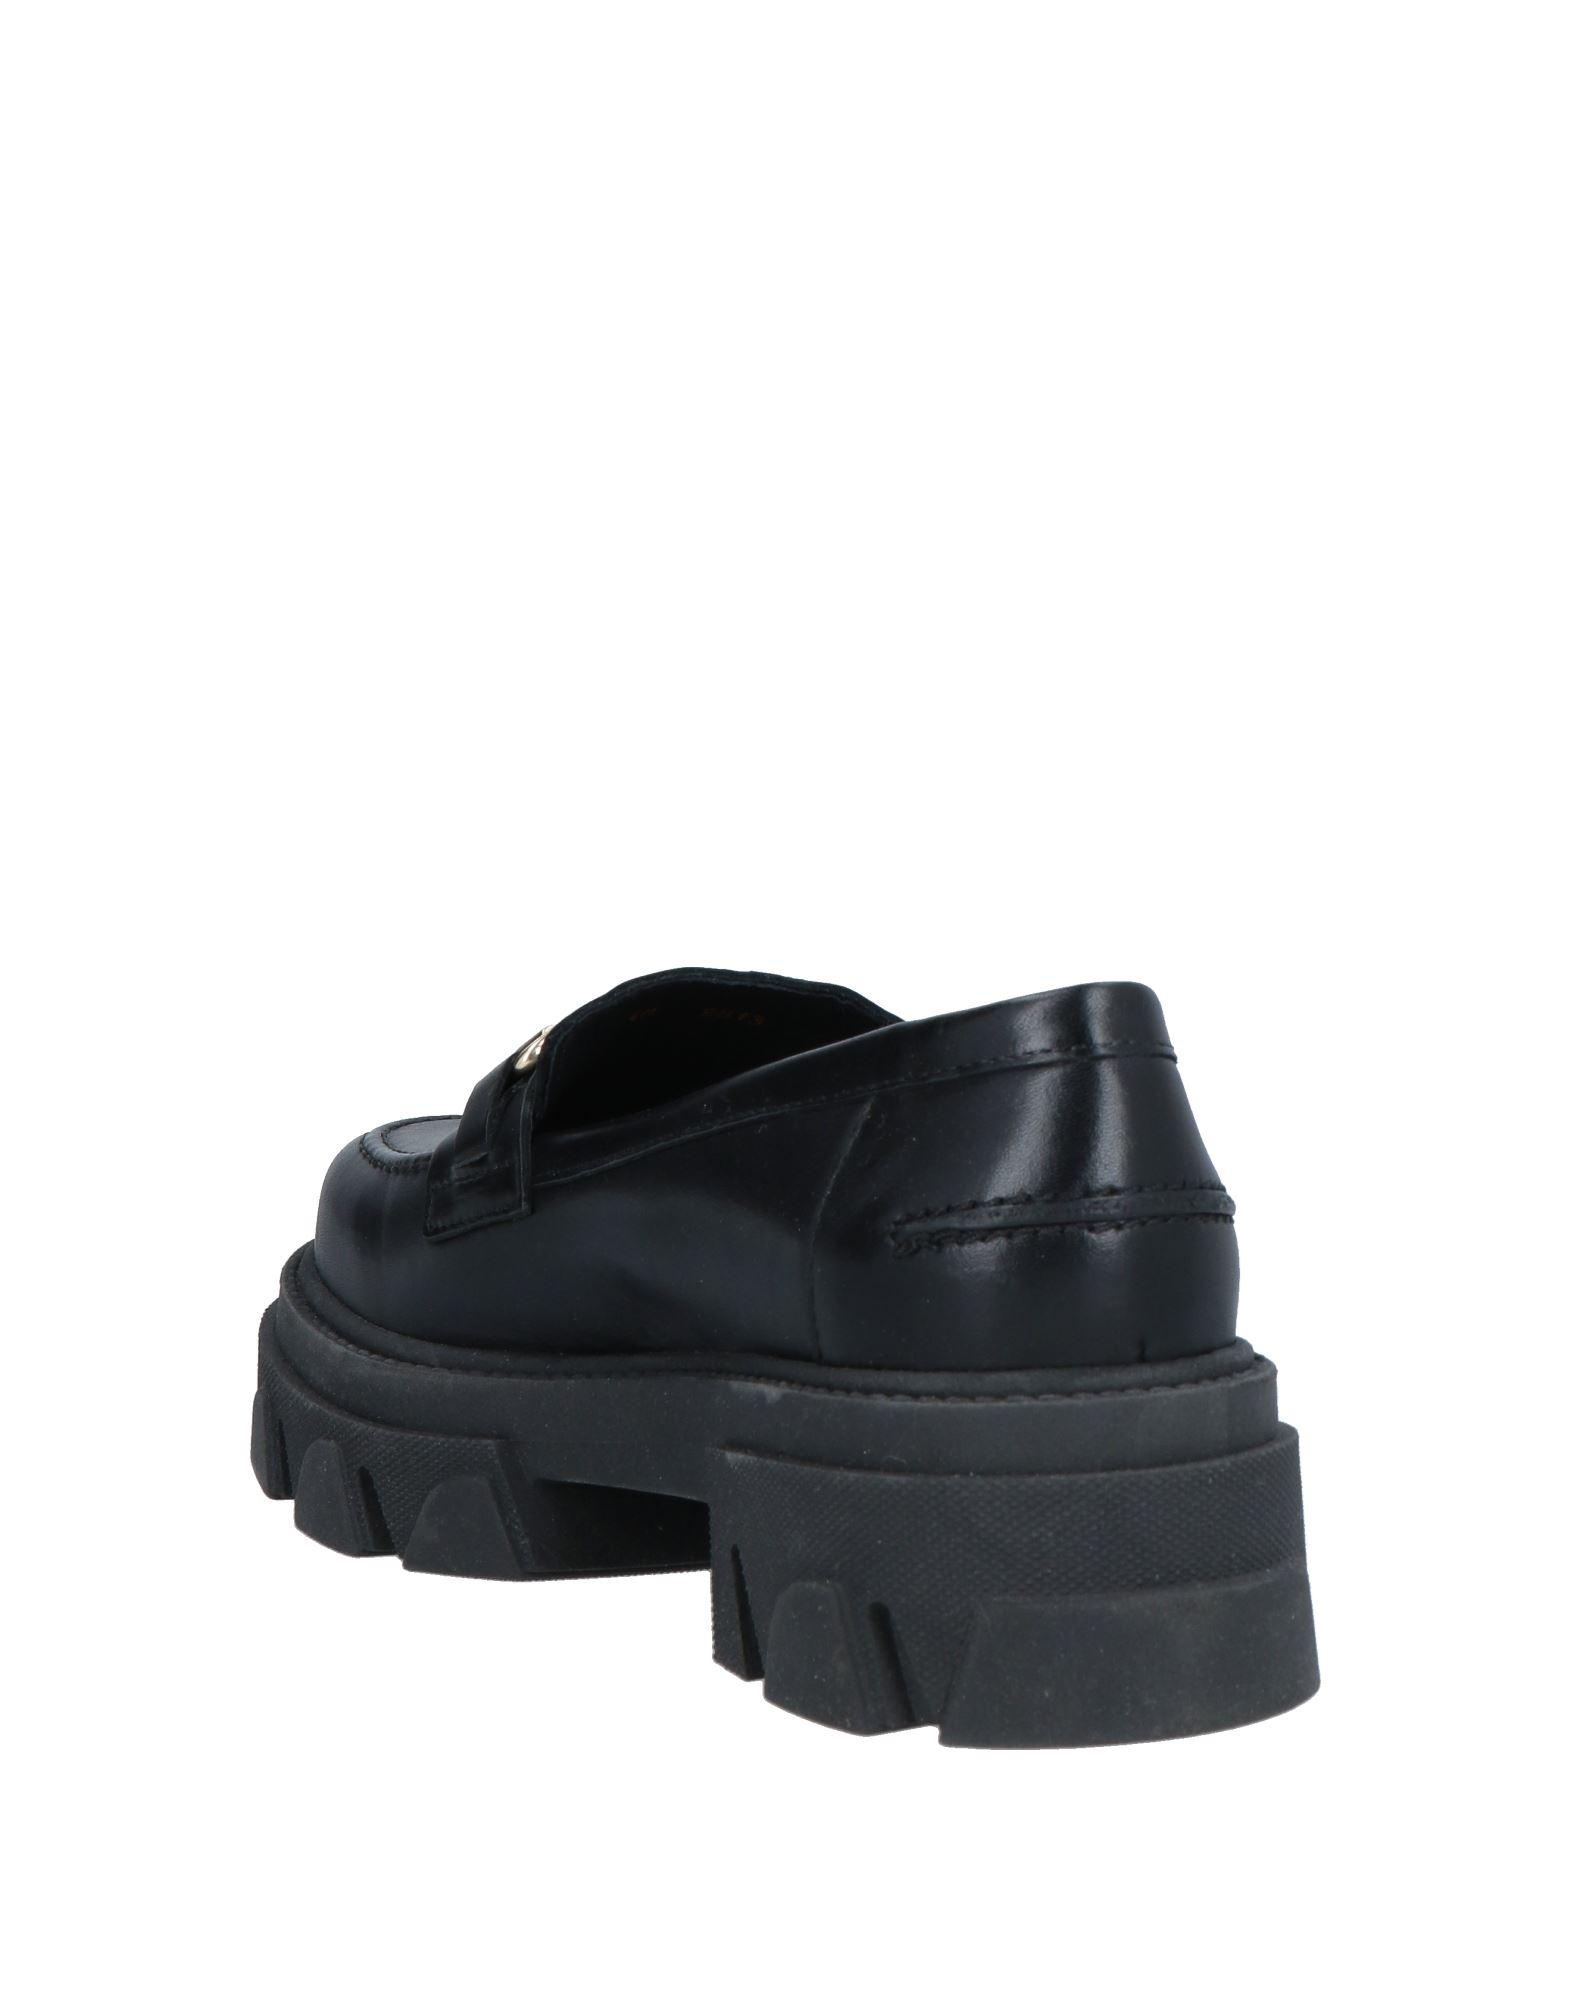 søster Ellers kød Shoe Biz Copenhagen Loafers in Black | Lyst